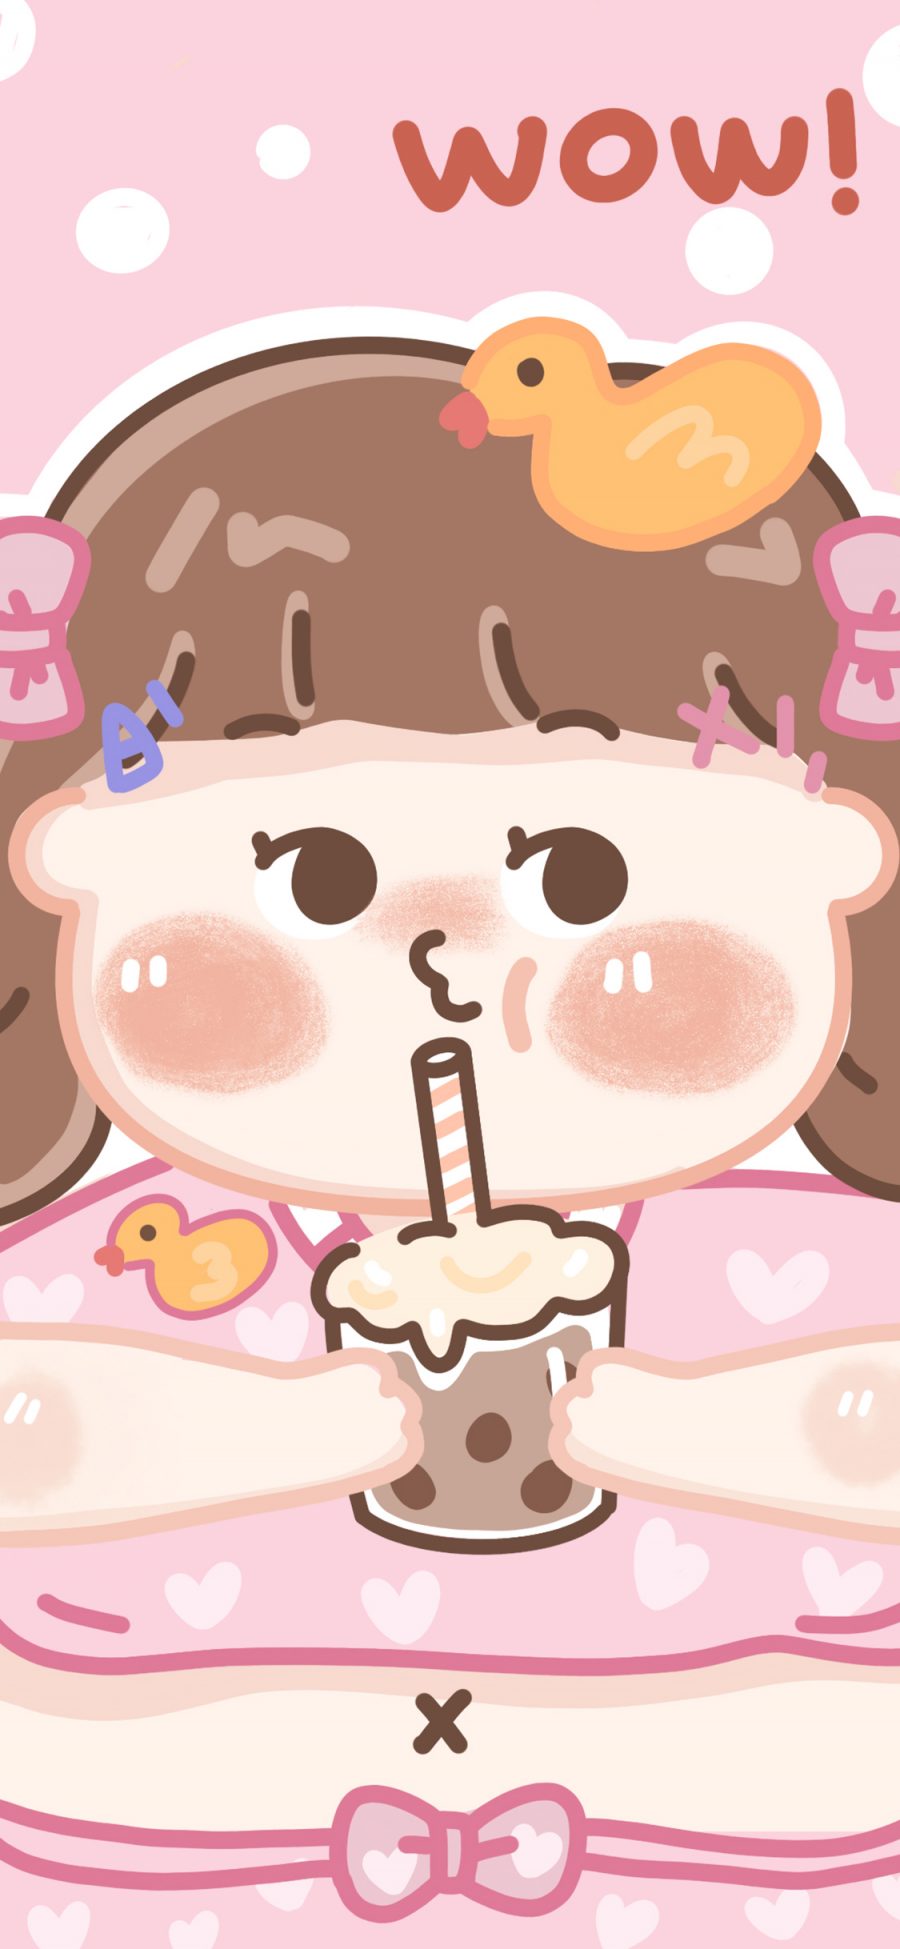 [2436×1125]wow 吃 女孩 胖子 胖妞 肚腩 鸭子 粉色 苹果手机动漫壁纸图片